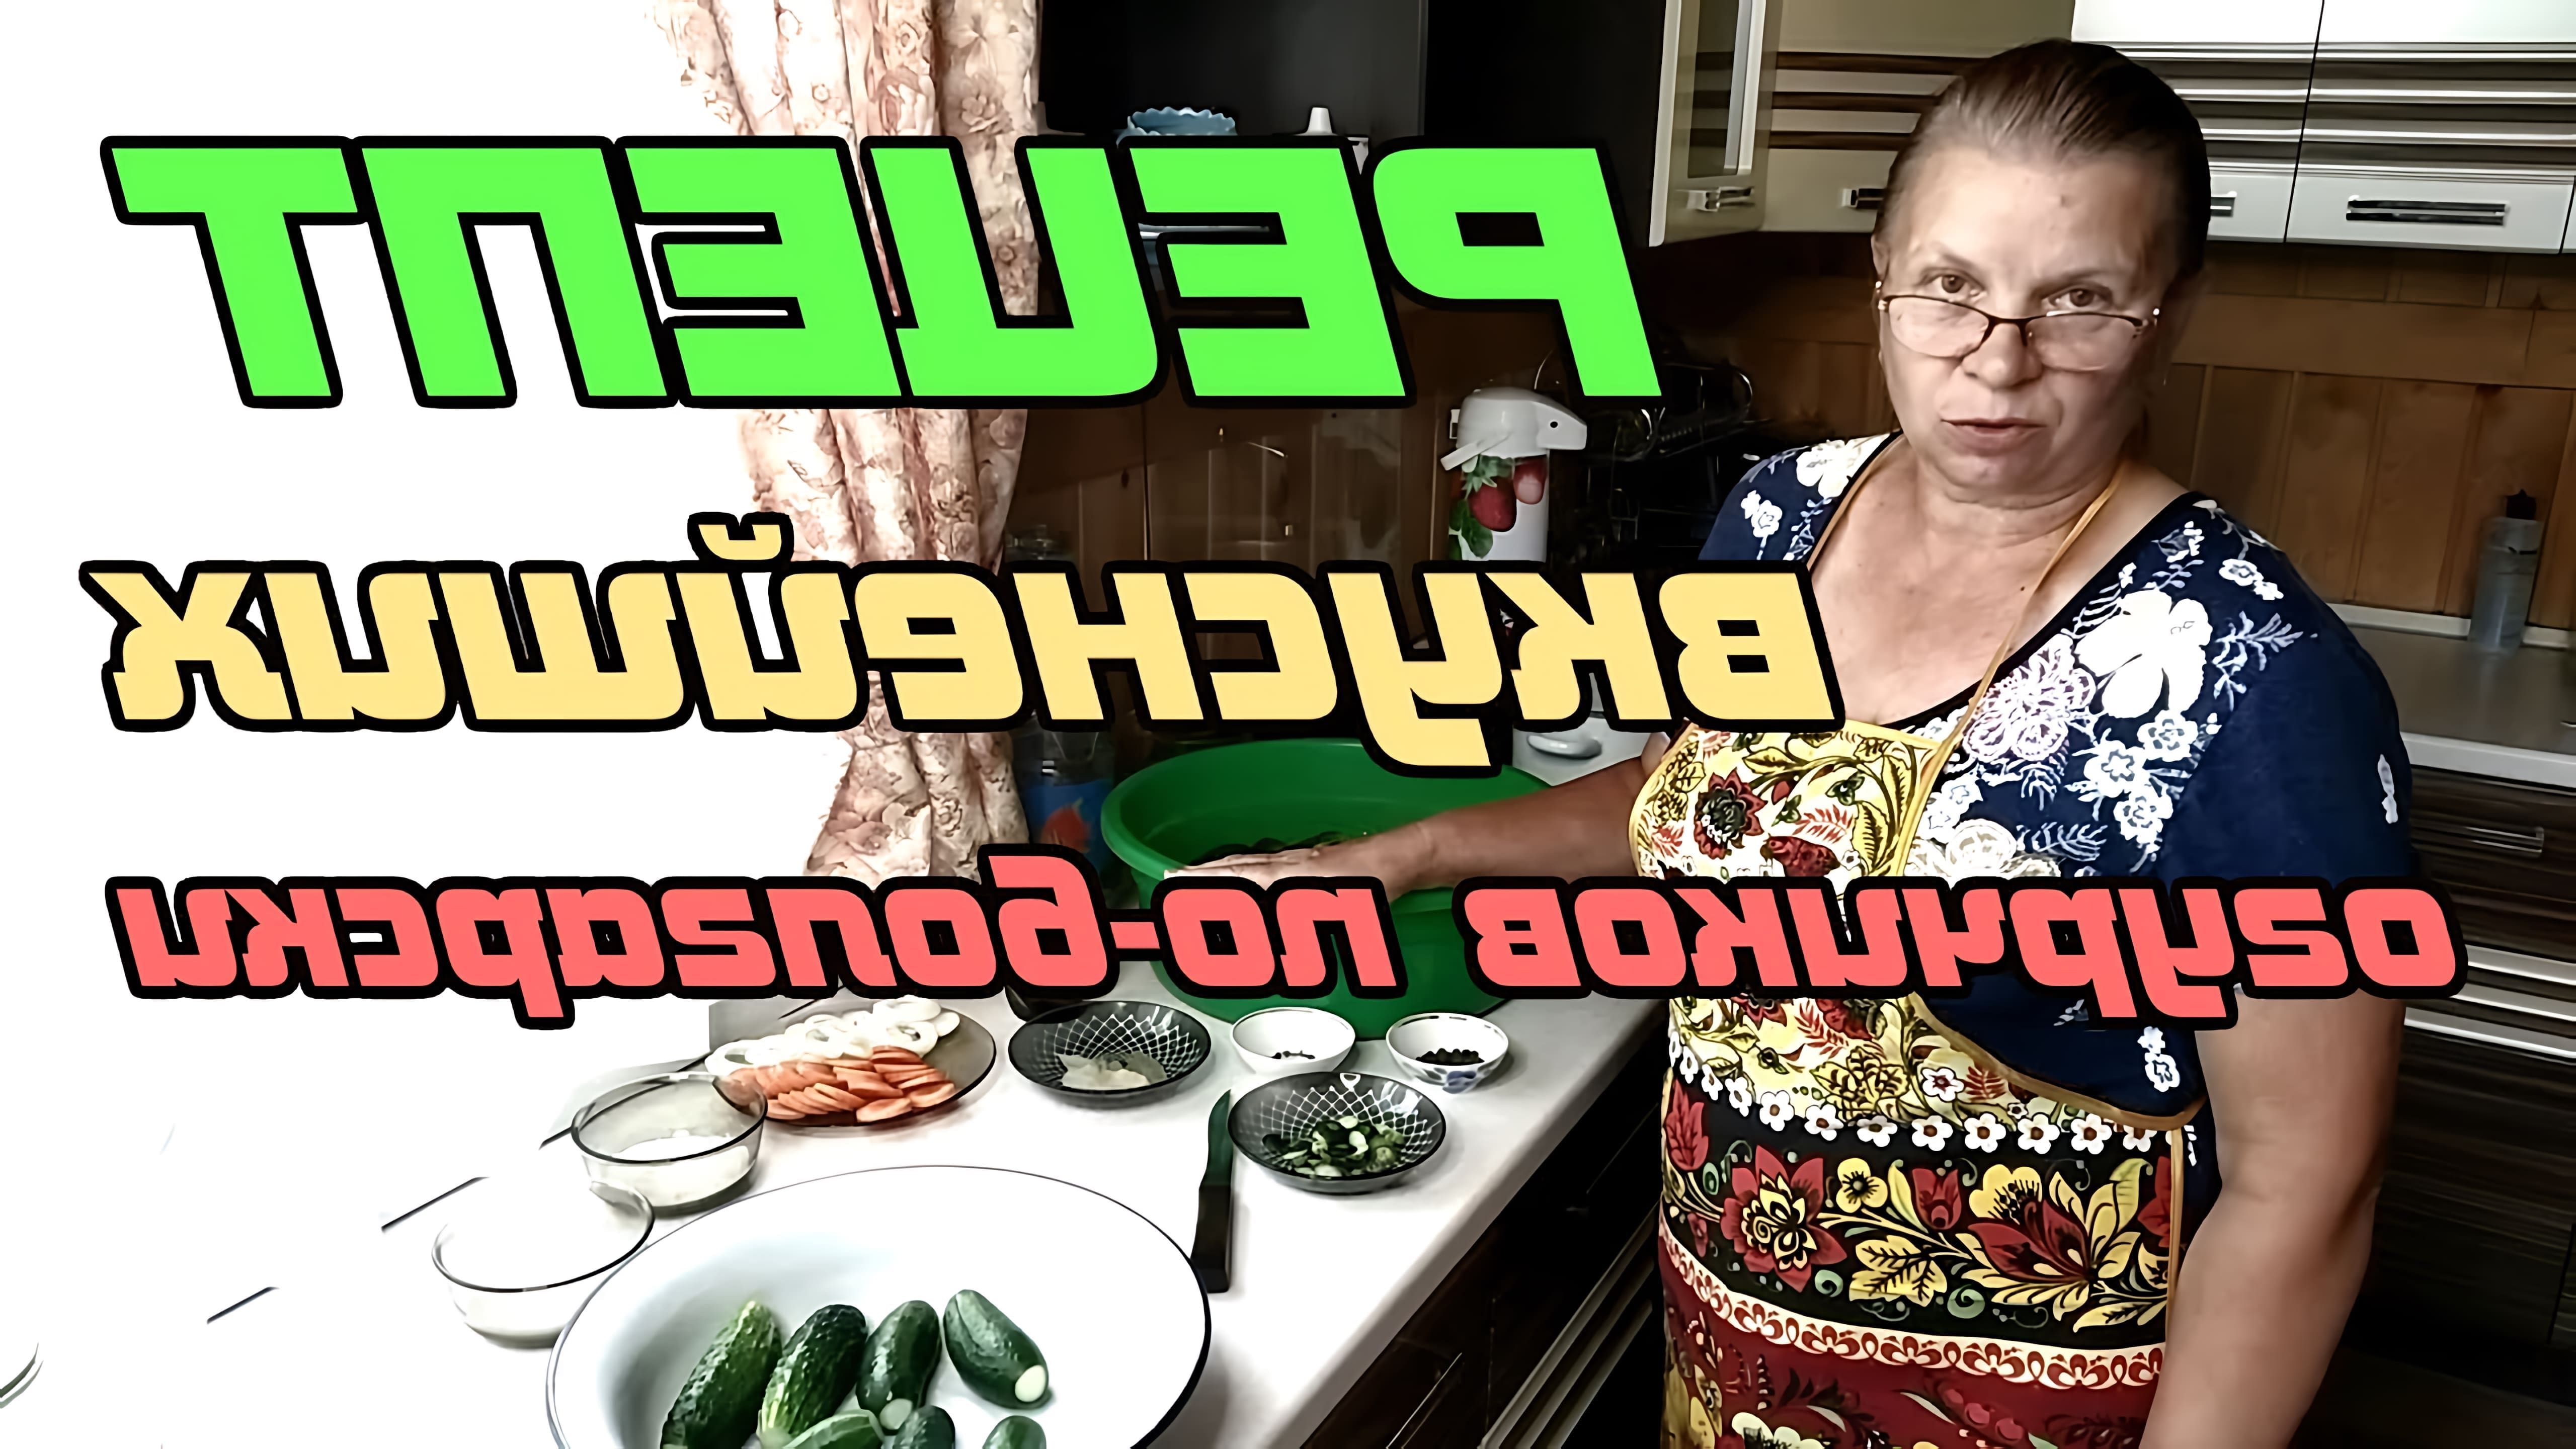 В этом видео демонстрируется рецепт приготовления вкусных огурчиков по-болгарски